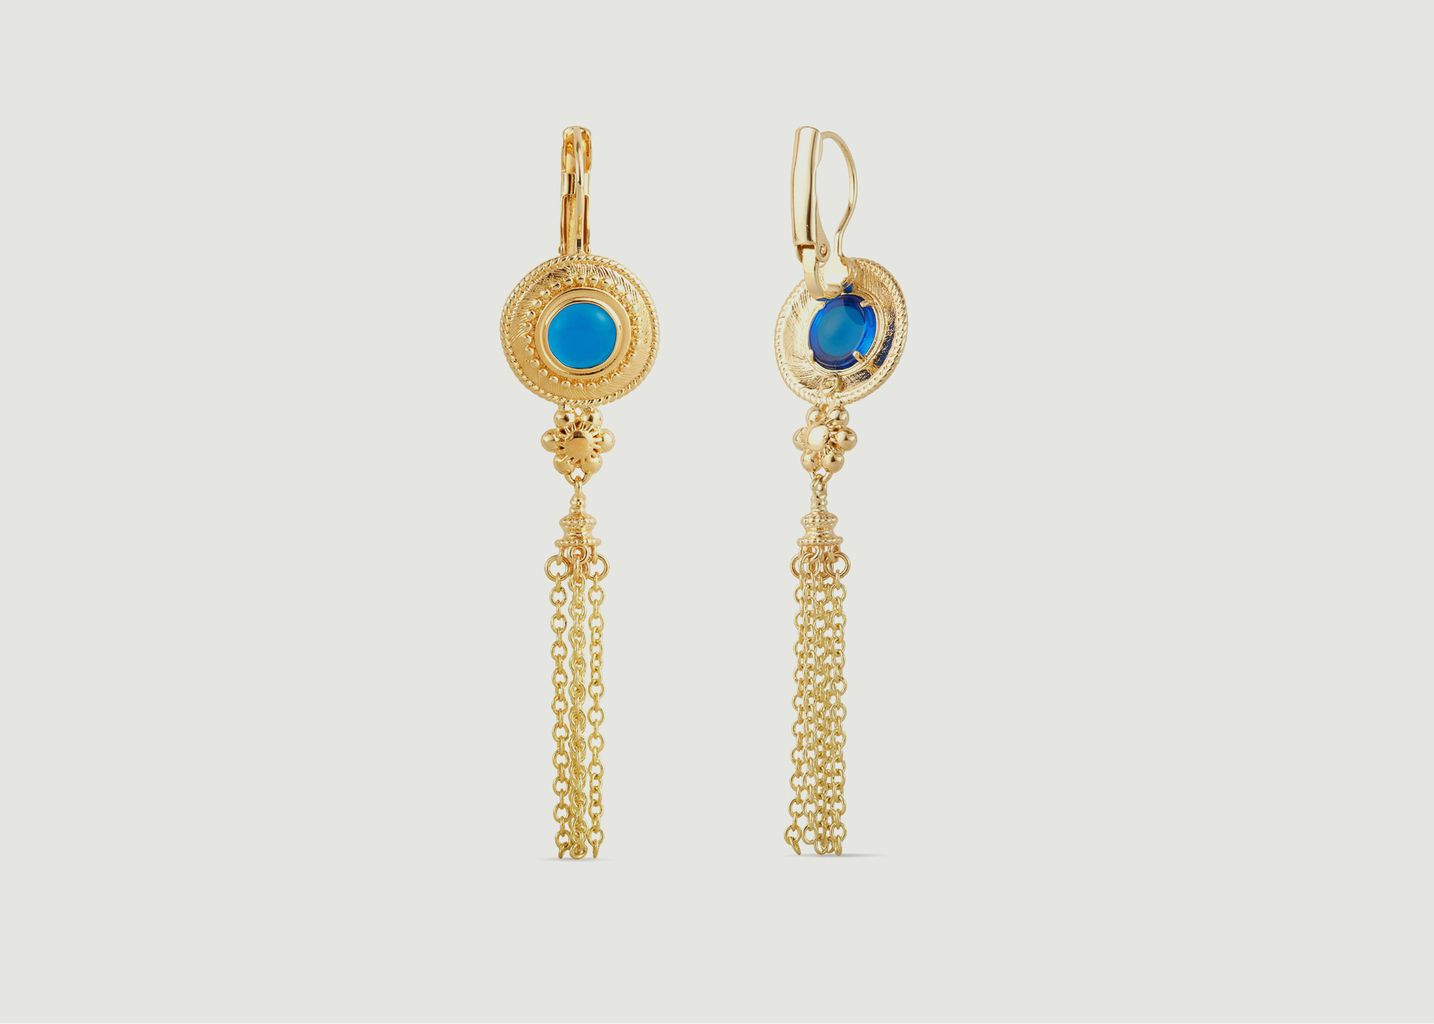 Hängende Ohrringe mit blauen Steinen und Ketten - Les Néréides